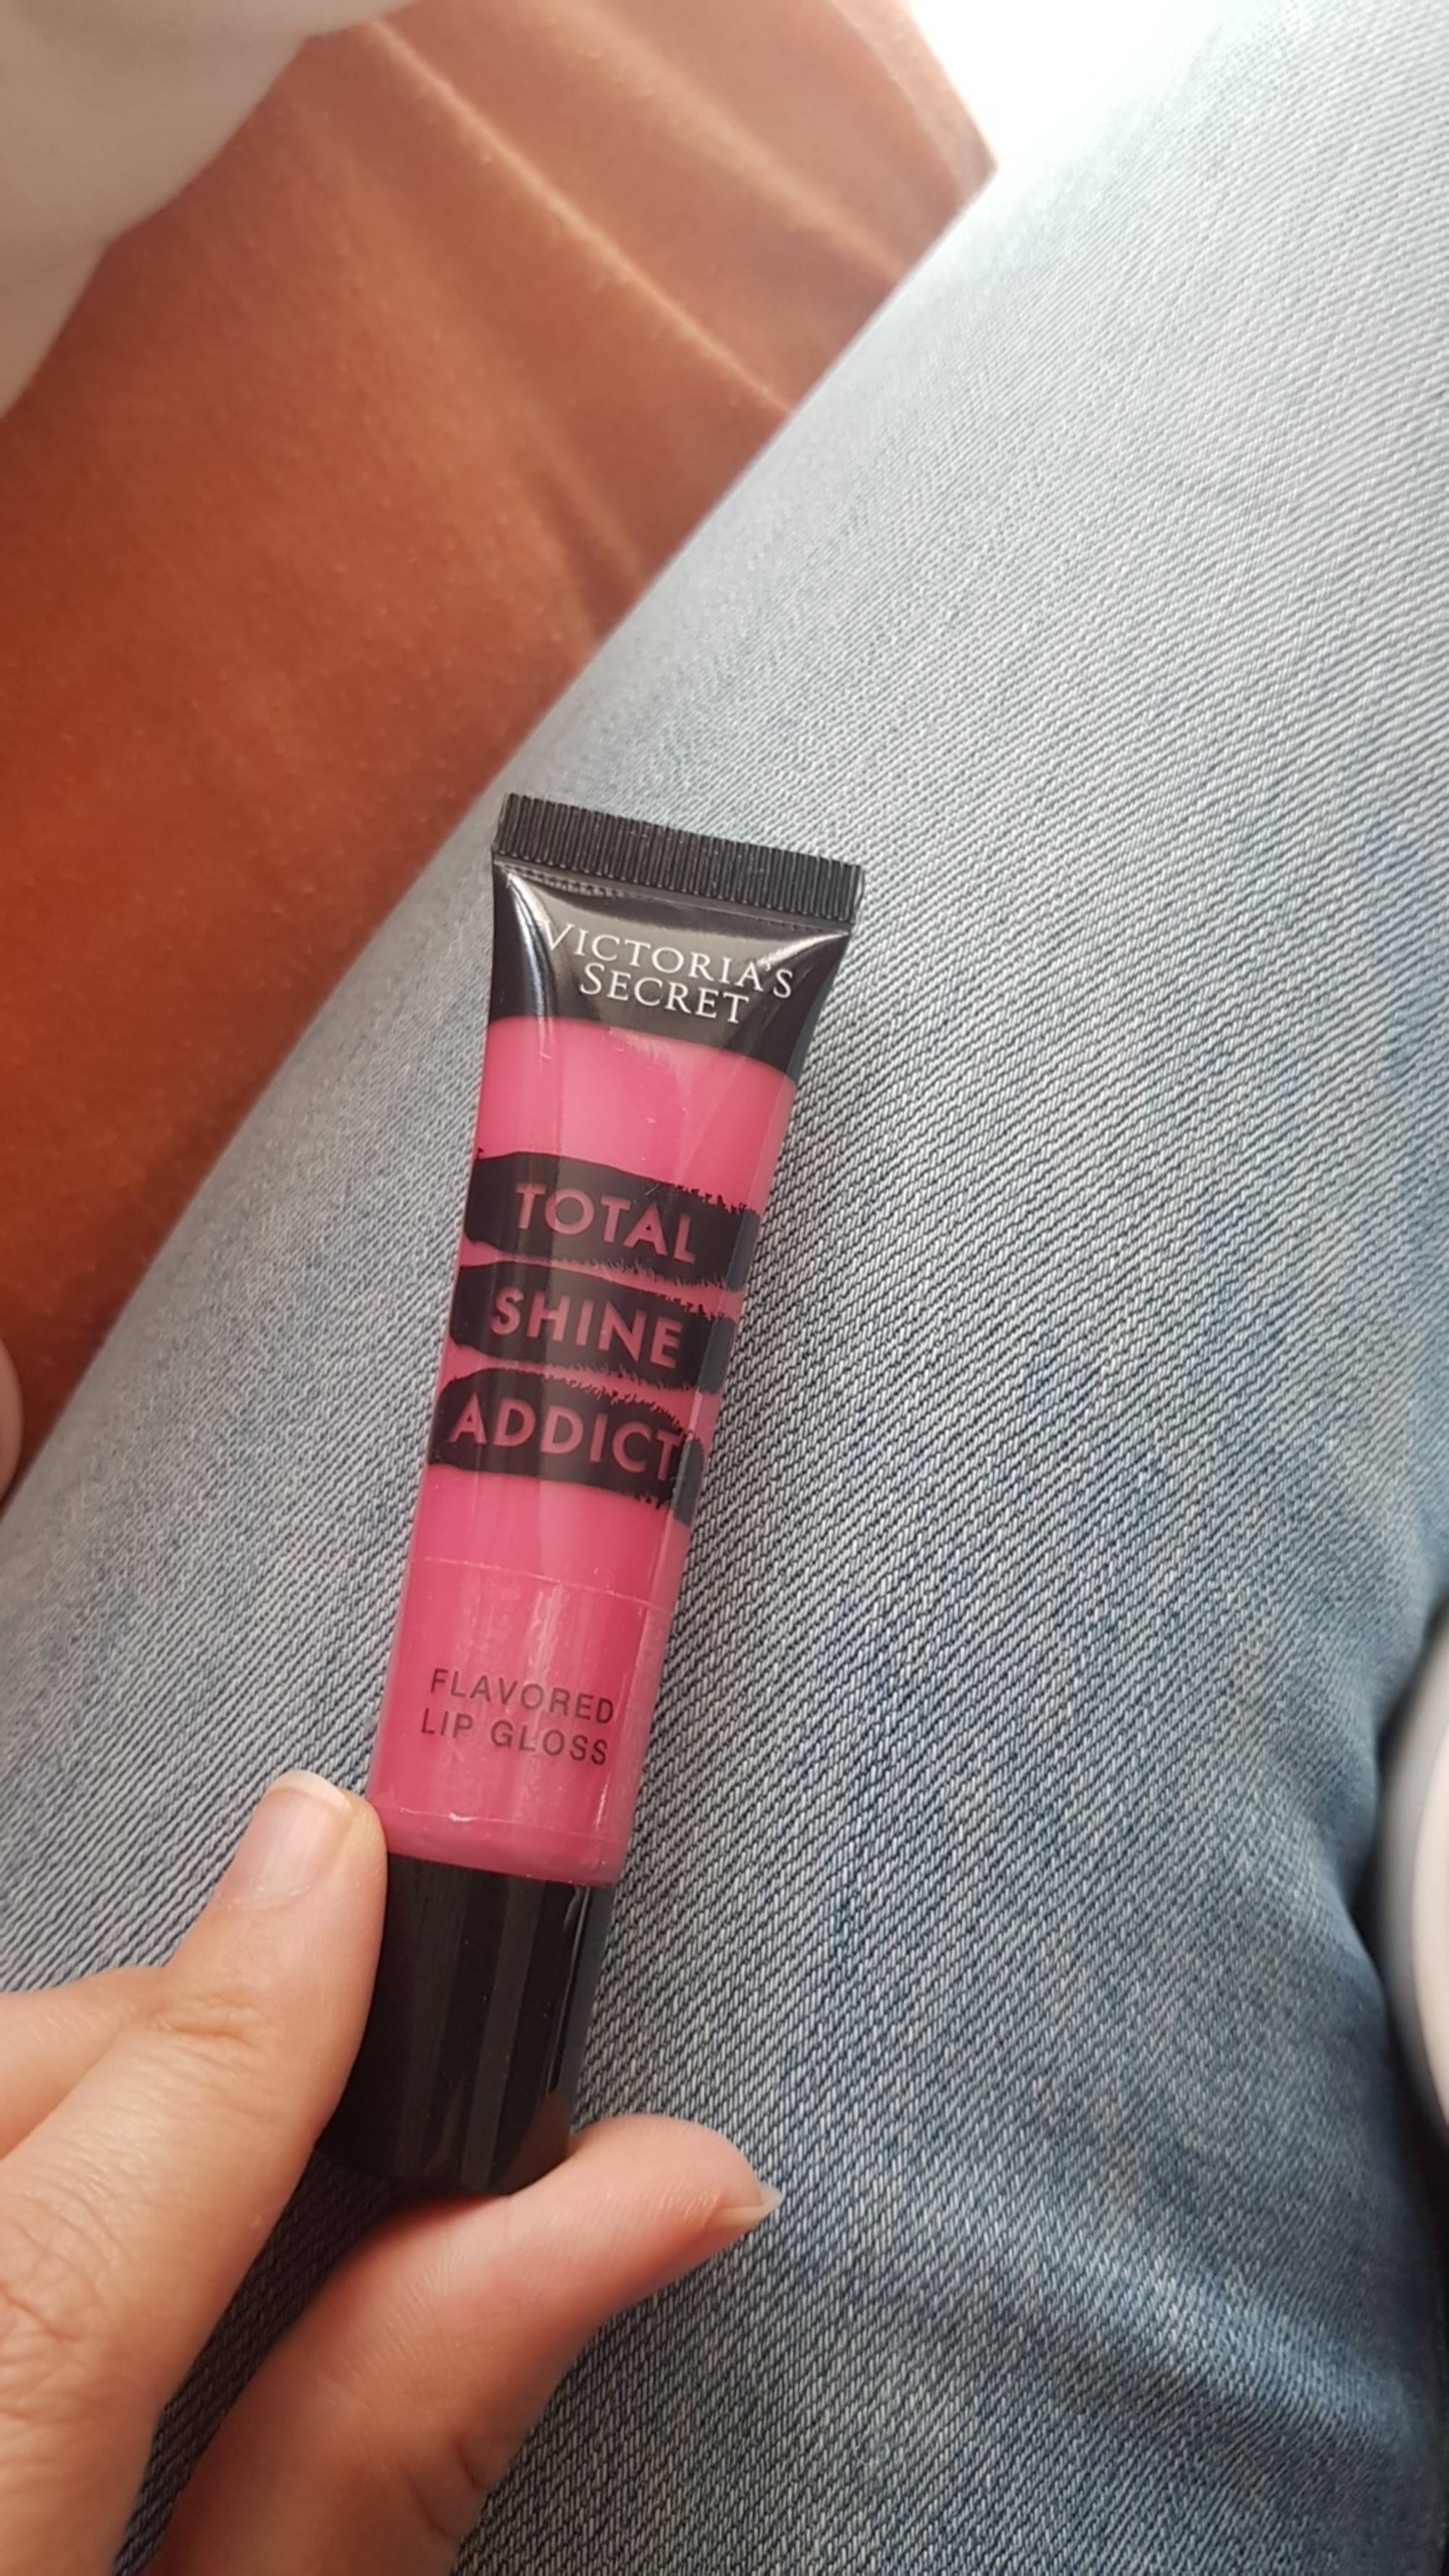 VICTORIA'S SECRET - Total shine addict - Flavored lip gloss